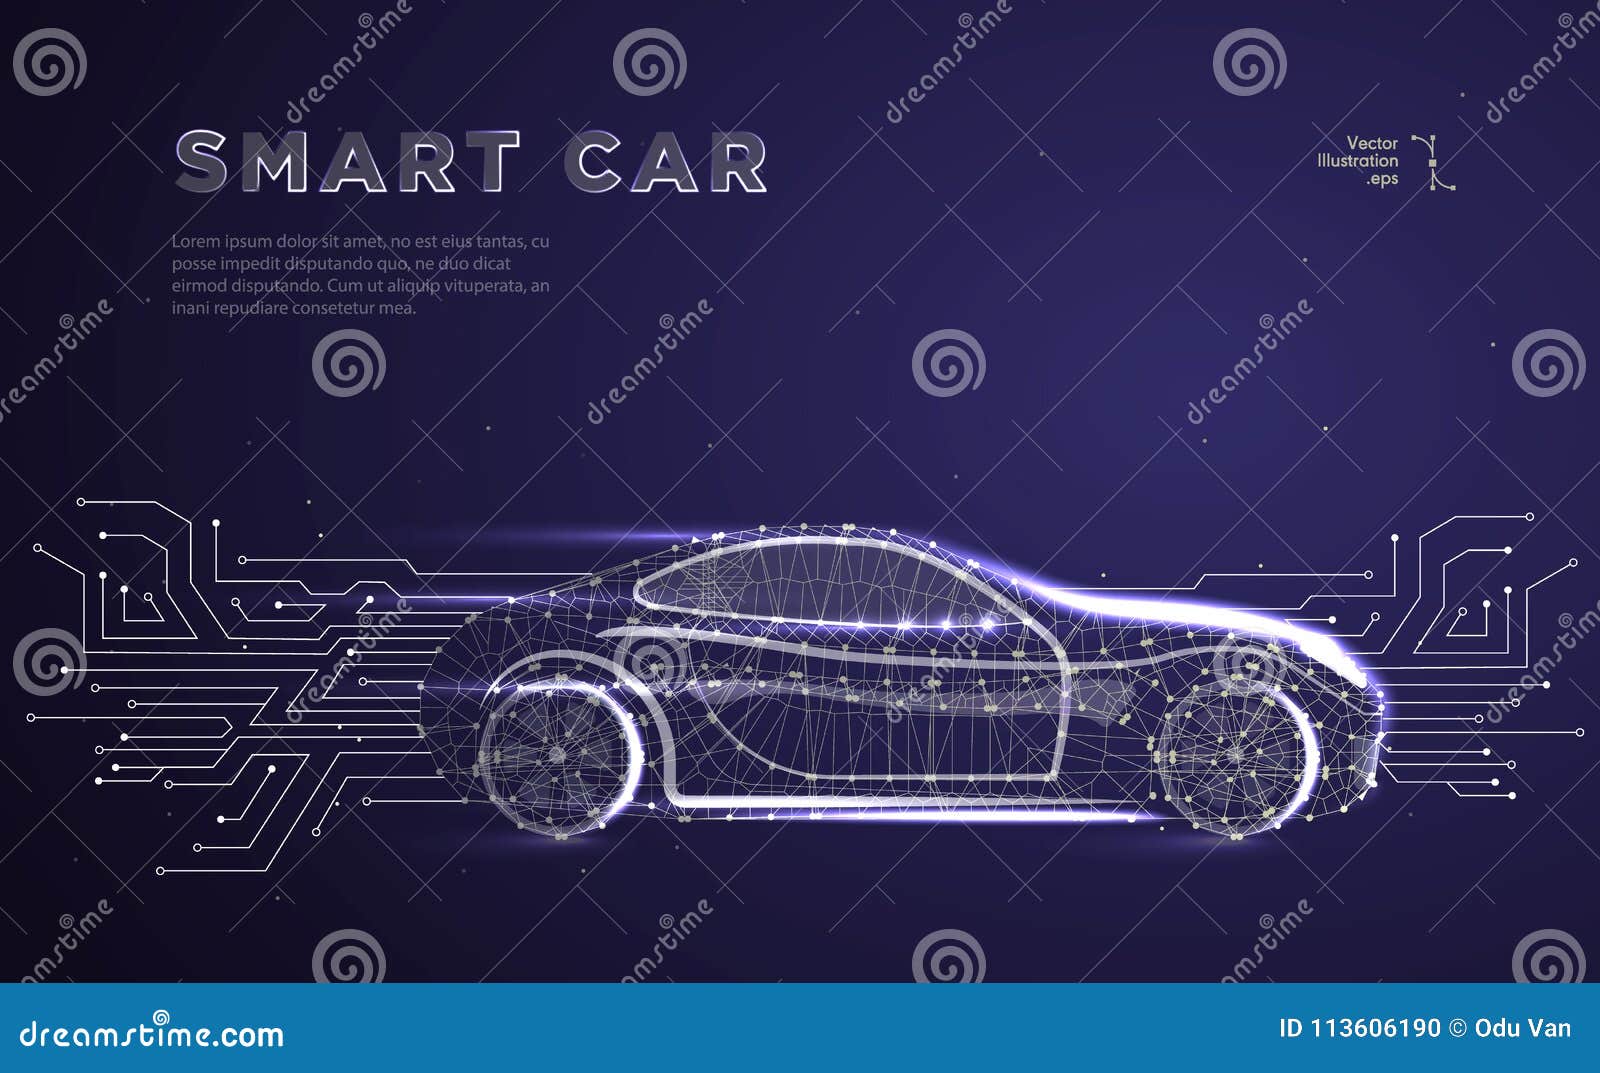 autonomous car vehicle